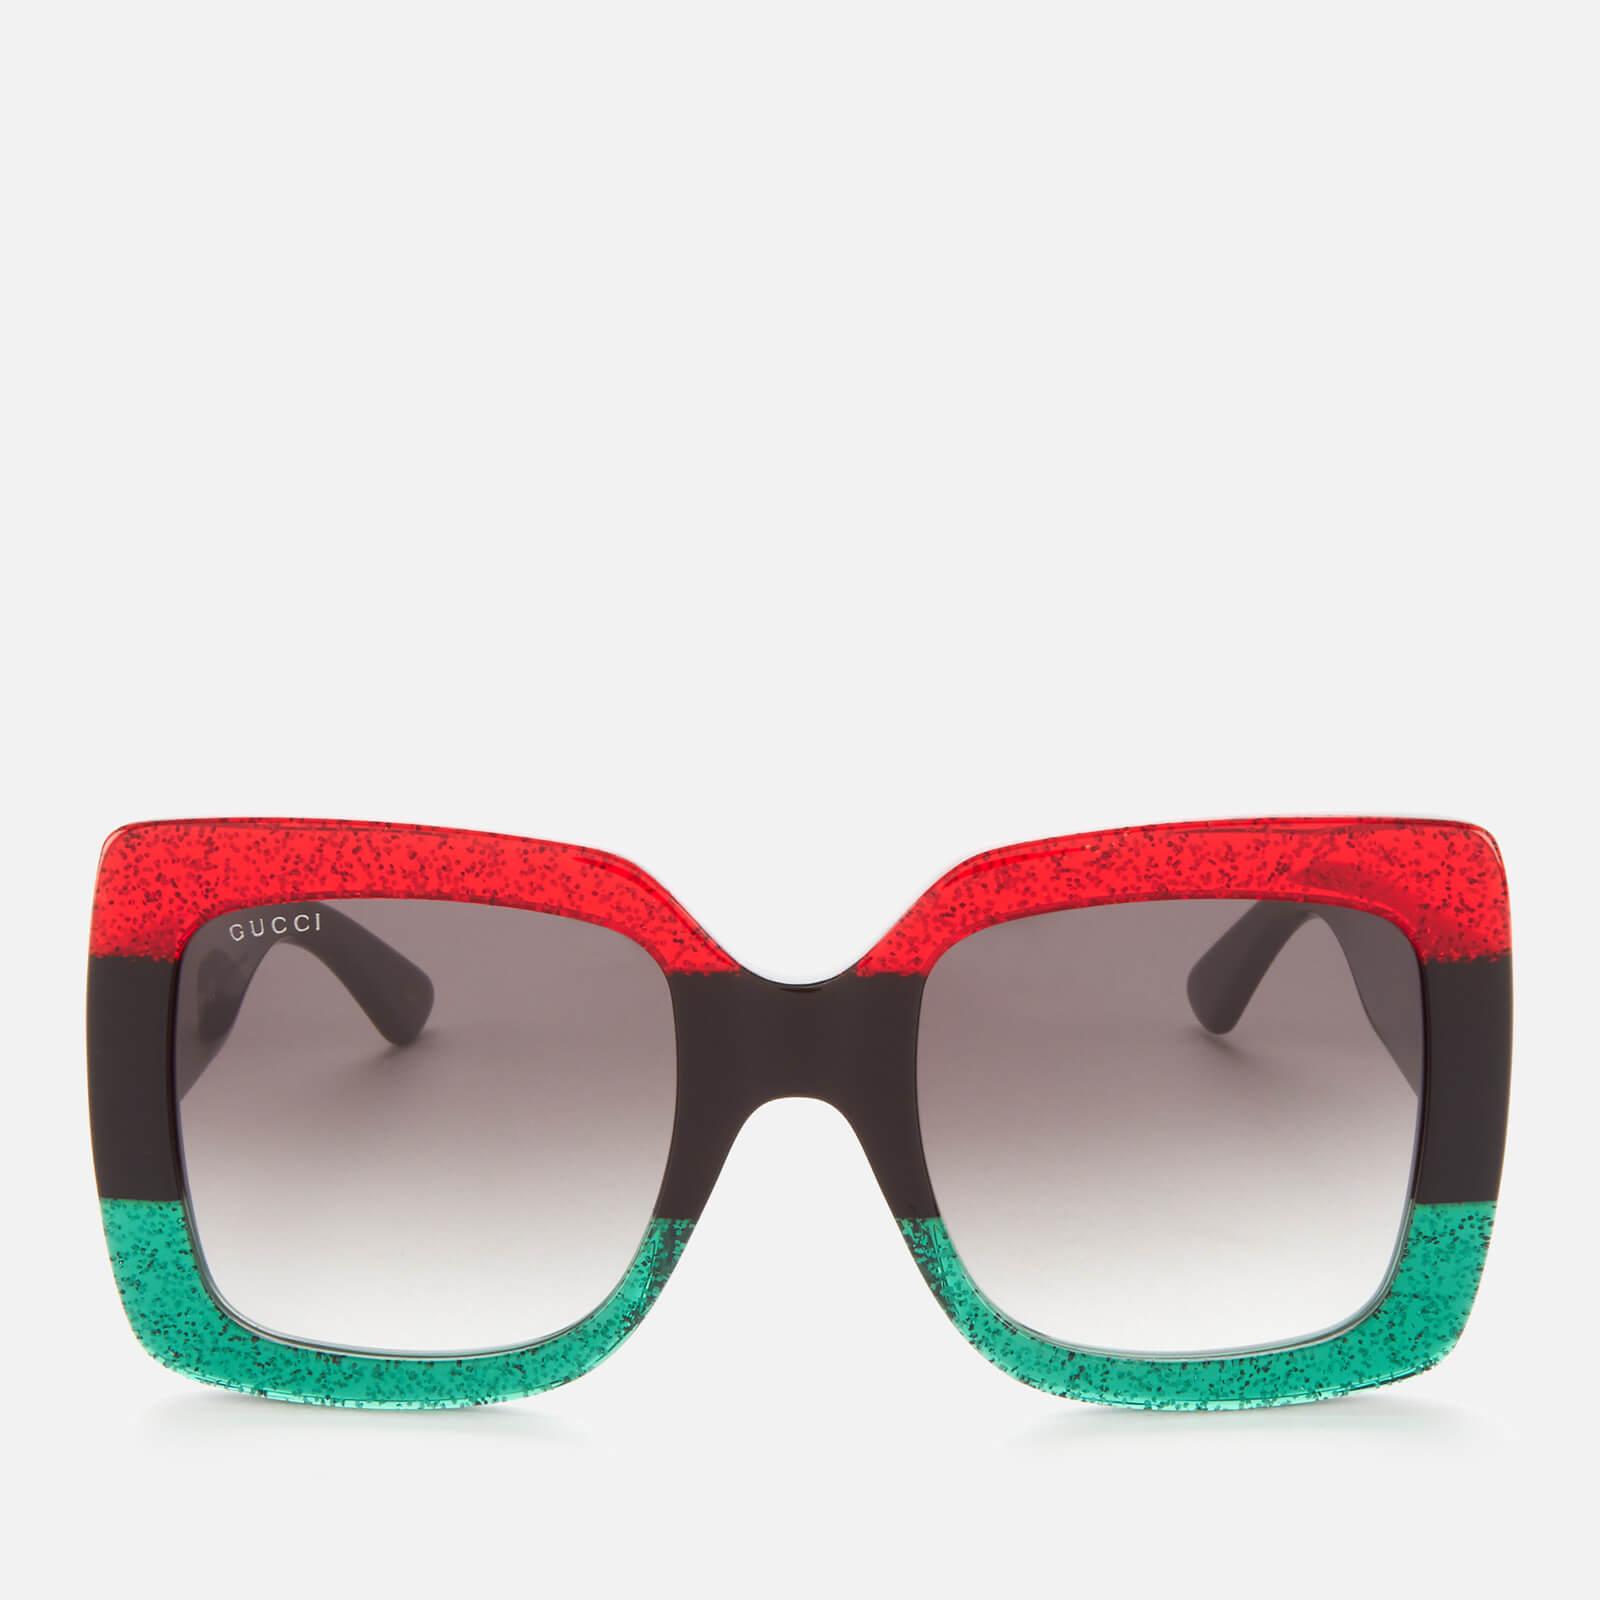 domæne Regelmæssighed uddannelse Gucci Glittered Gradient Oversized Square Sunglasses, Red/black/green - Lyst